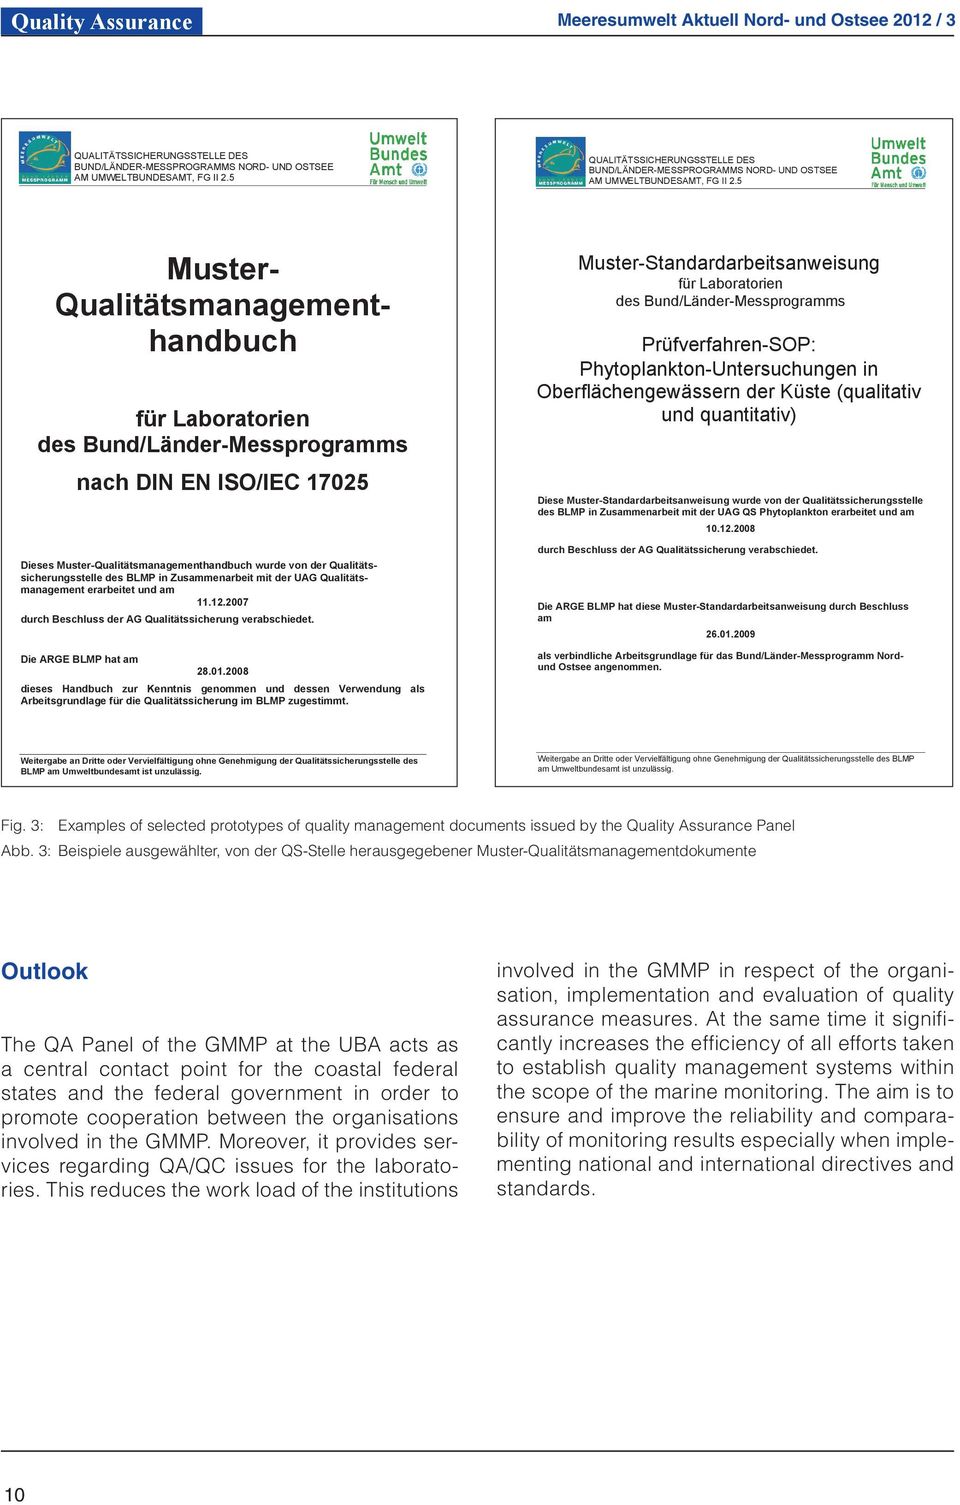 5 Muster- Qualitätsmanagementhandbuch für Laboratorien des Bund/Länder-Messprogramms nach DIN EN ISO/IEC 17025 Dieses Muster-Qualitätsmanagementhandbuch wurde von der Qualitätssicherungsstelle des